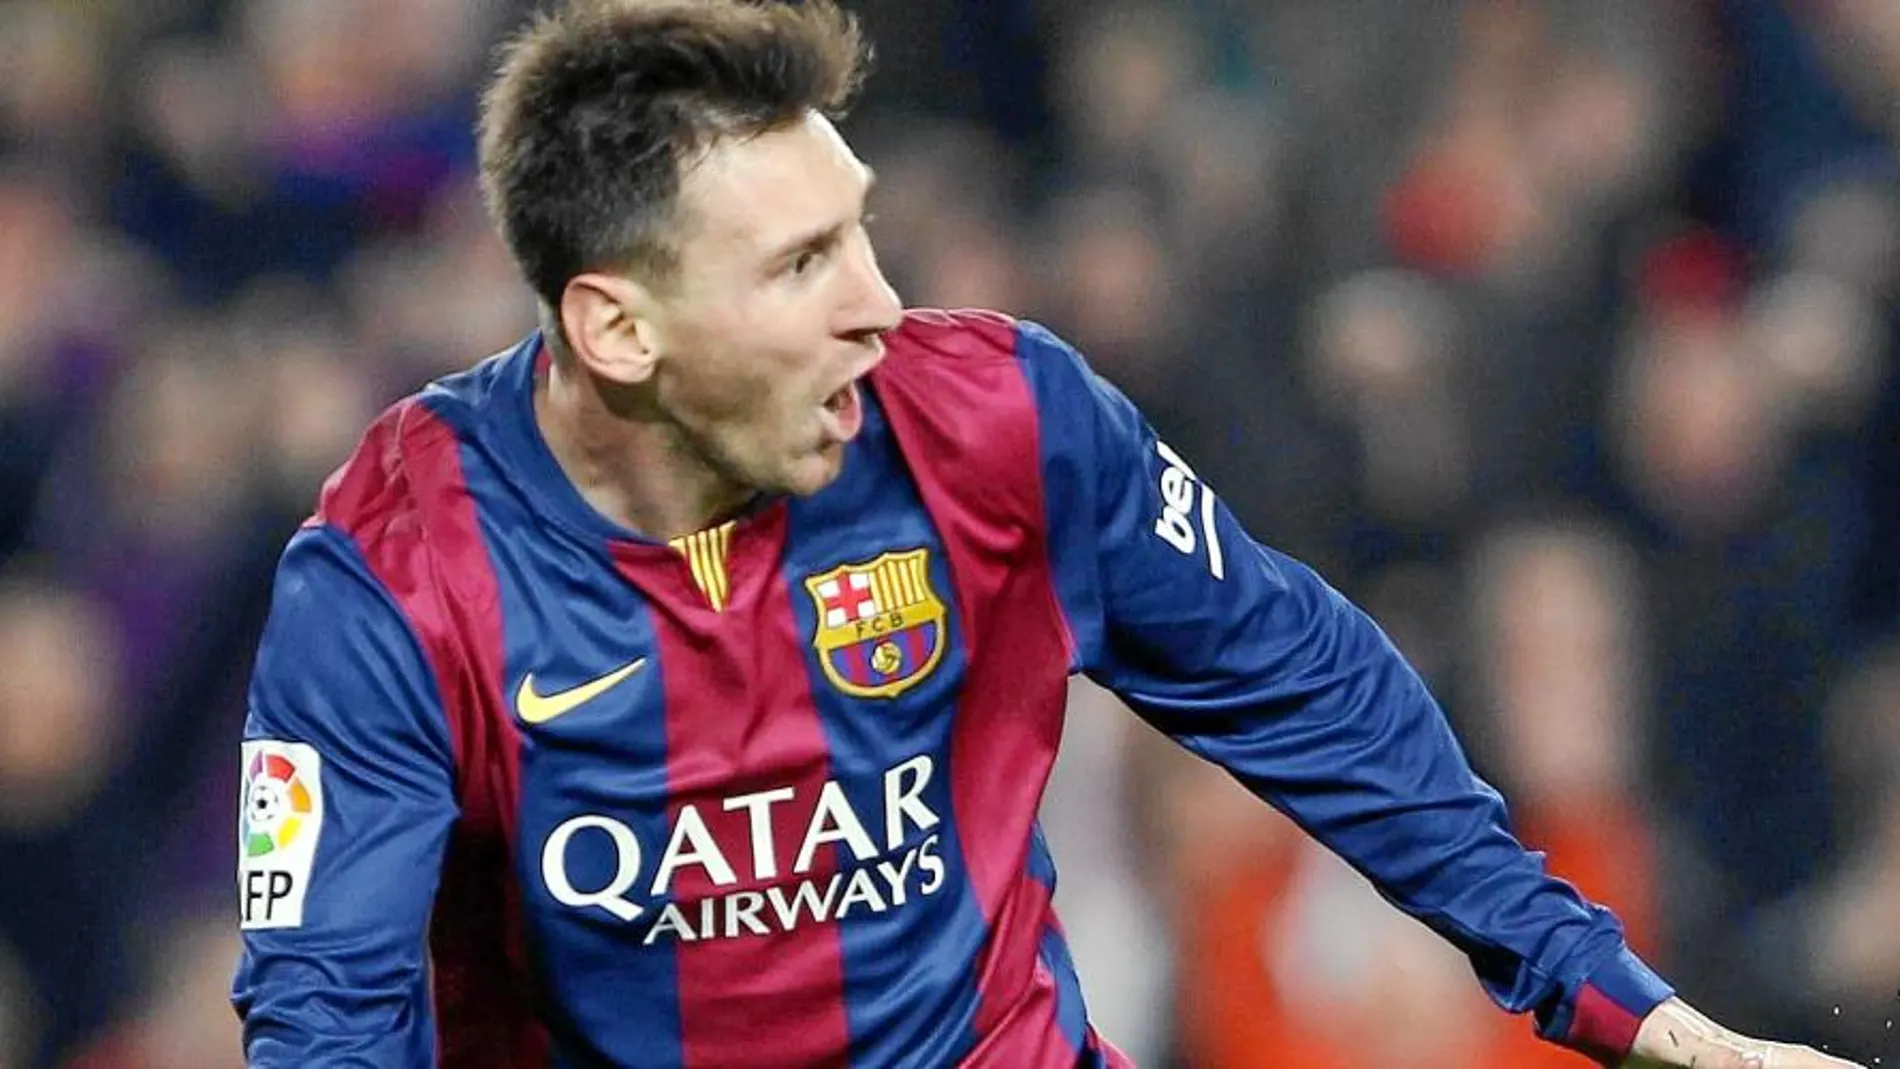 Messi ayer volvió a disfrutar del fútbol con un partido espectacular. Corrió, marcó y sonrió